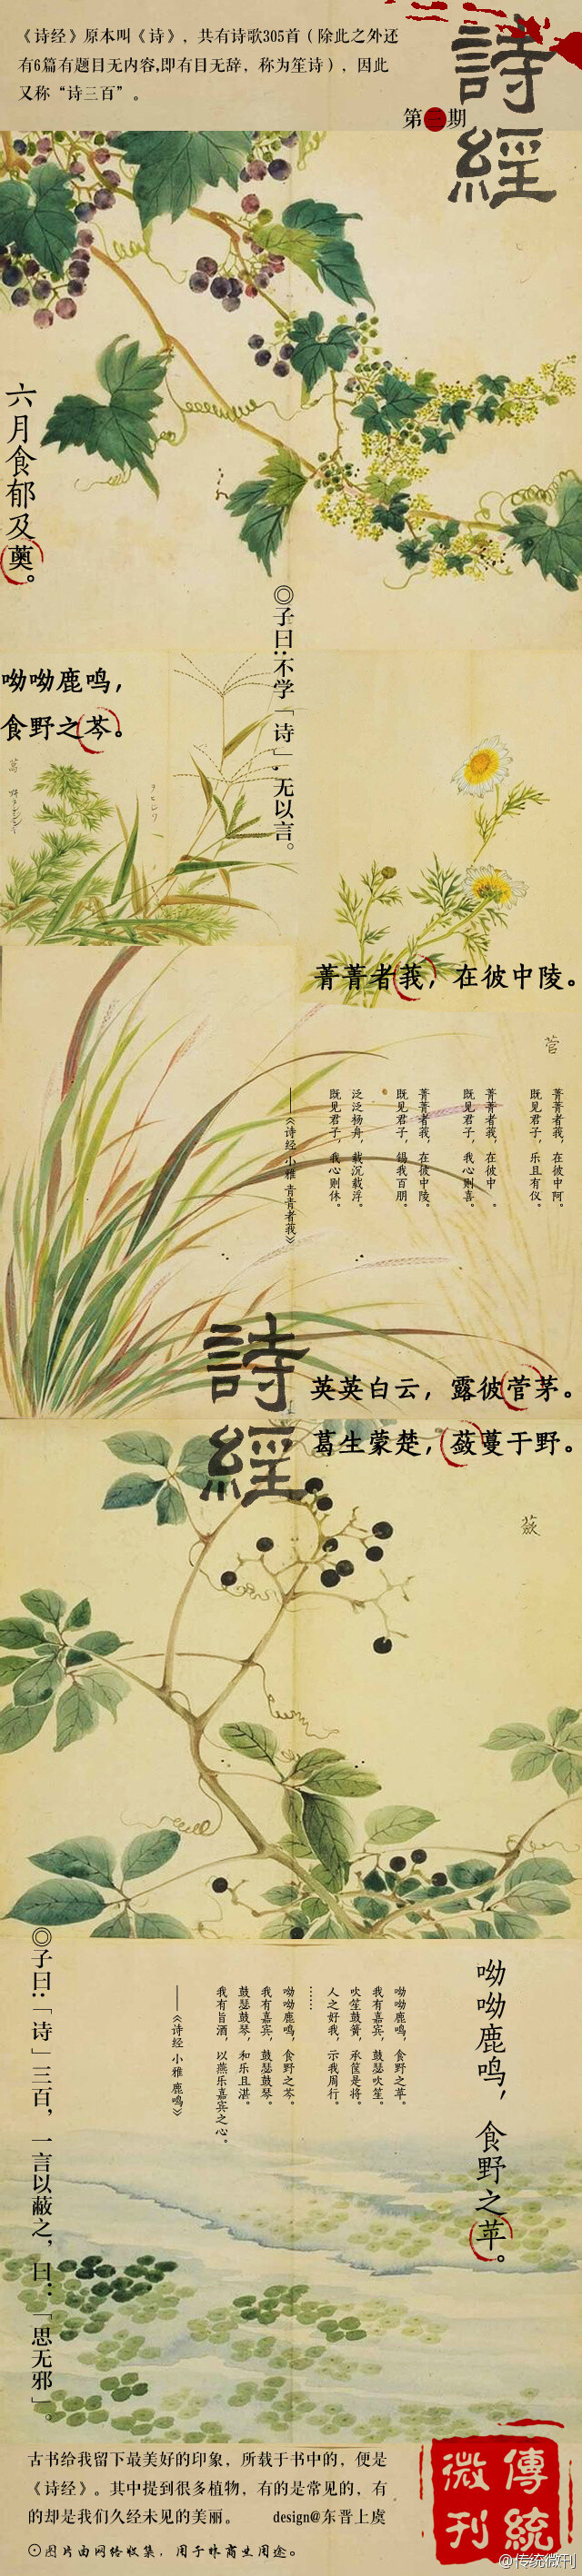 曰:思无邪 | 诗经 中国 传统 手绘 植物 绘画 国画